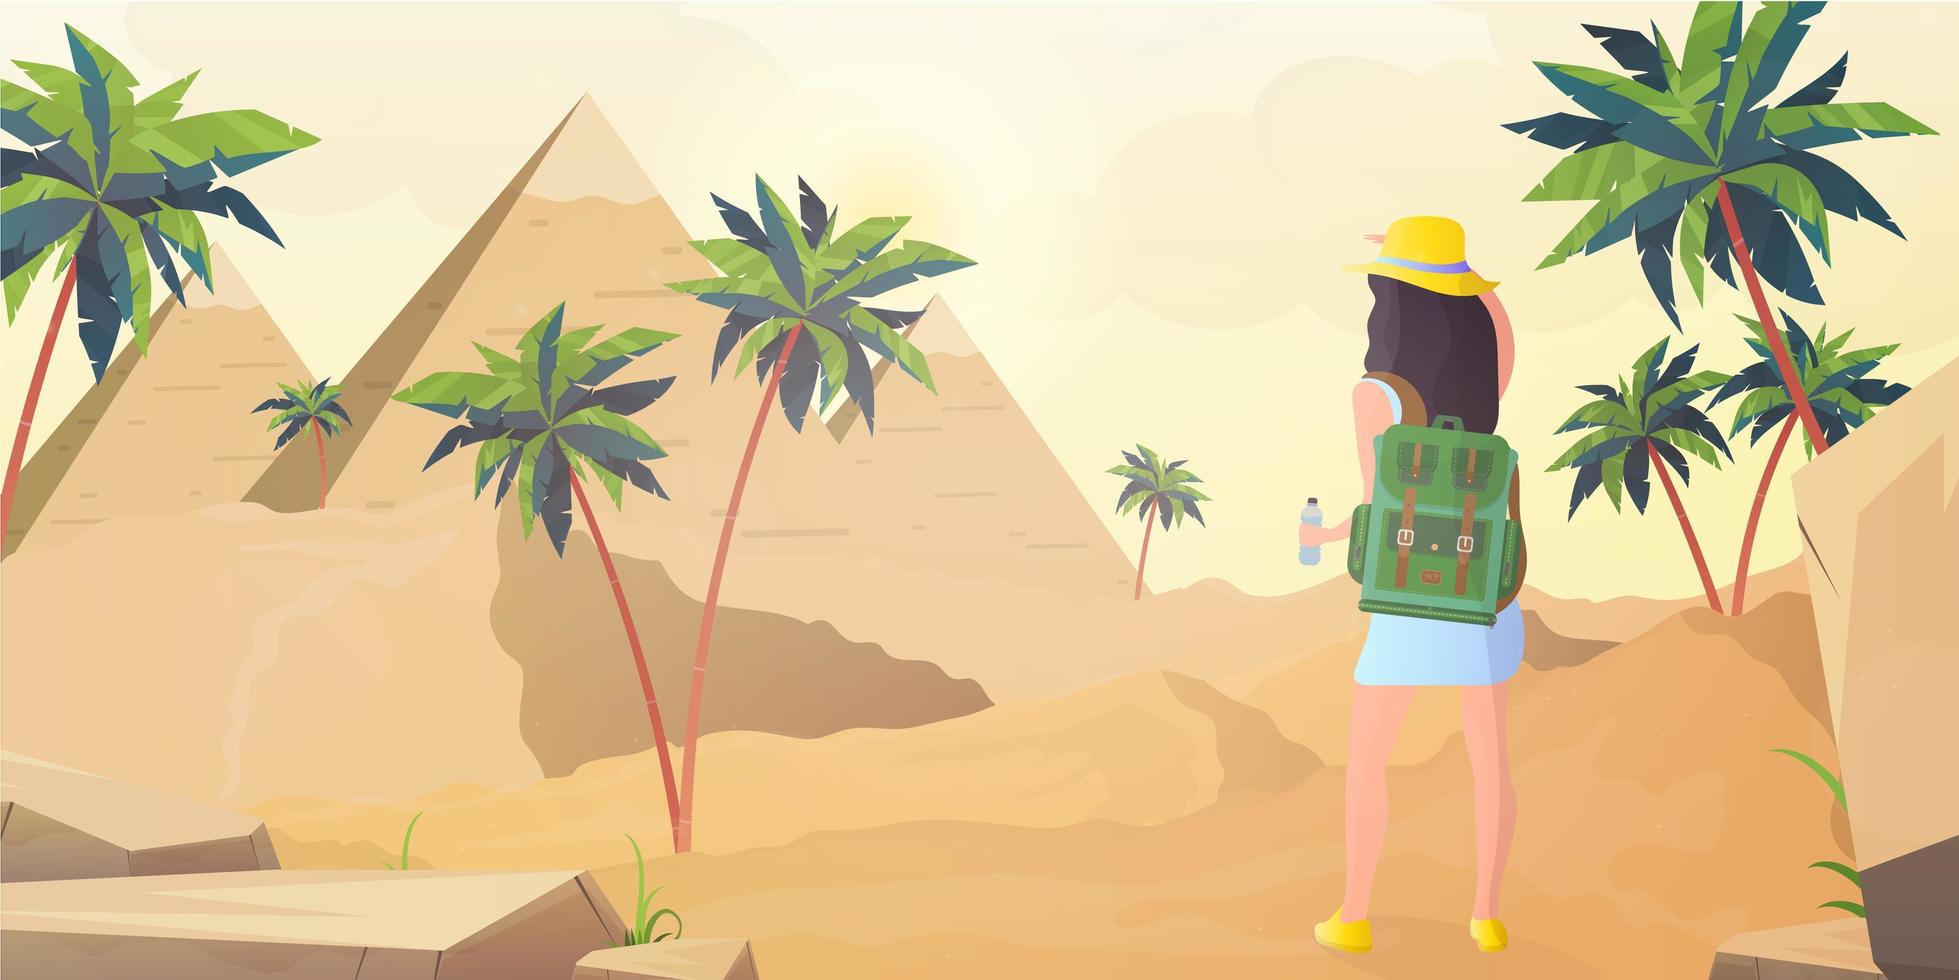 la ragazza guarda le piramidi egizie. deserto del sahara in stile cartone animato. illustrazione vettoriale. vettore